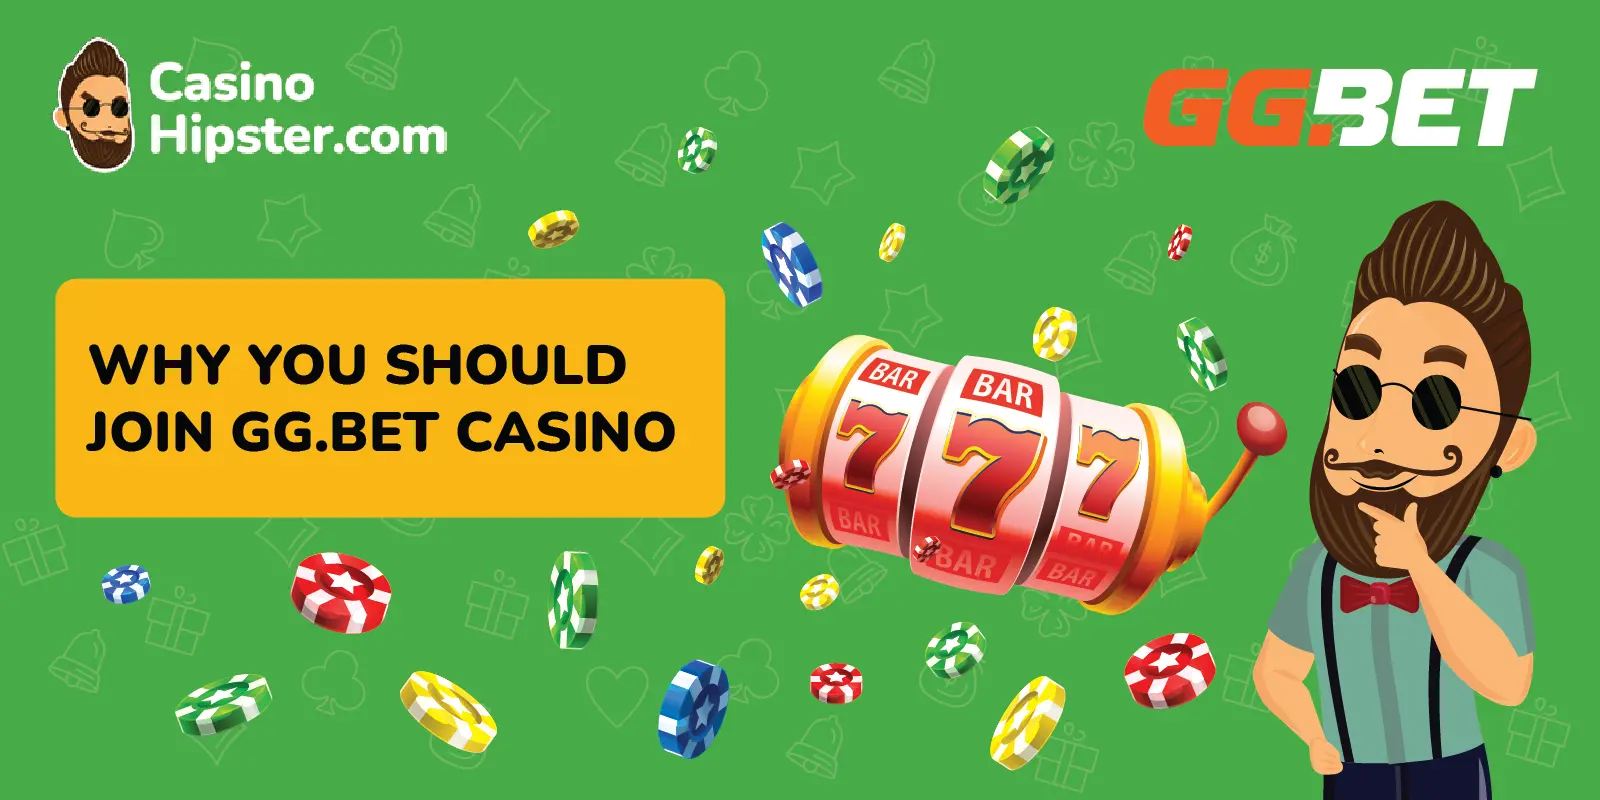 gg.bet casino benefits